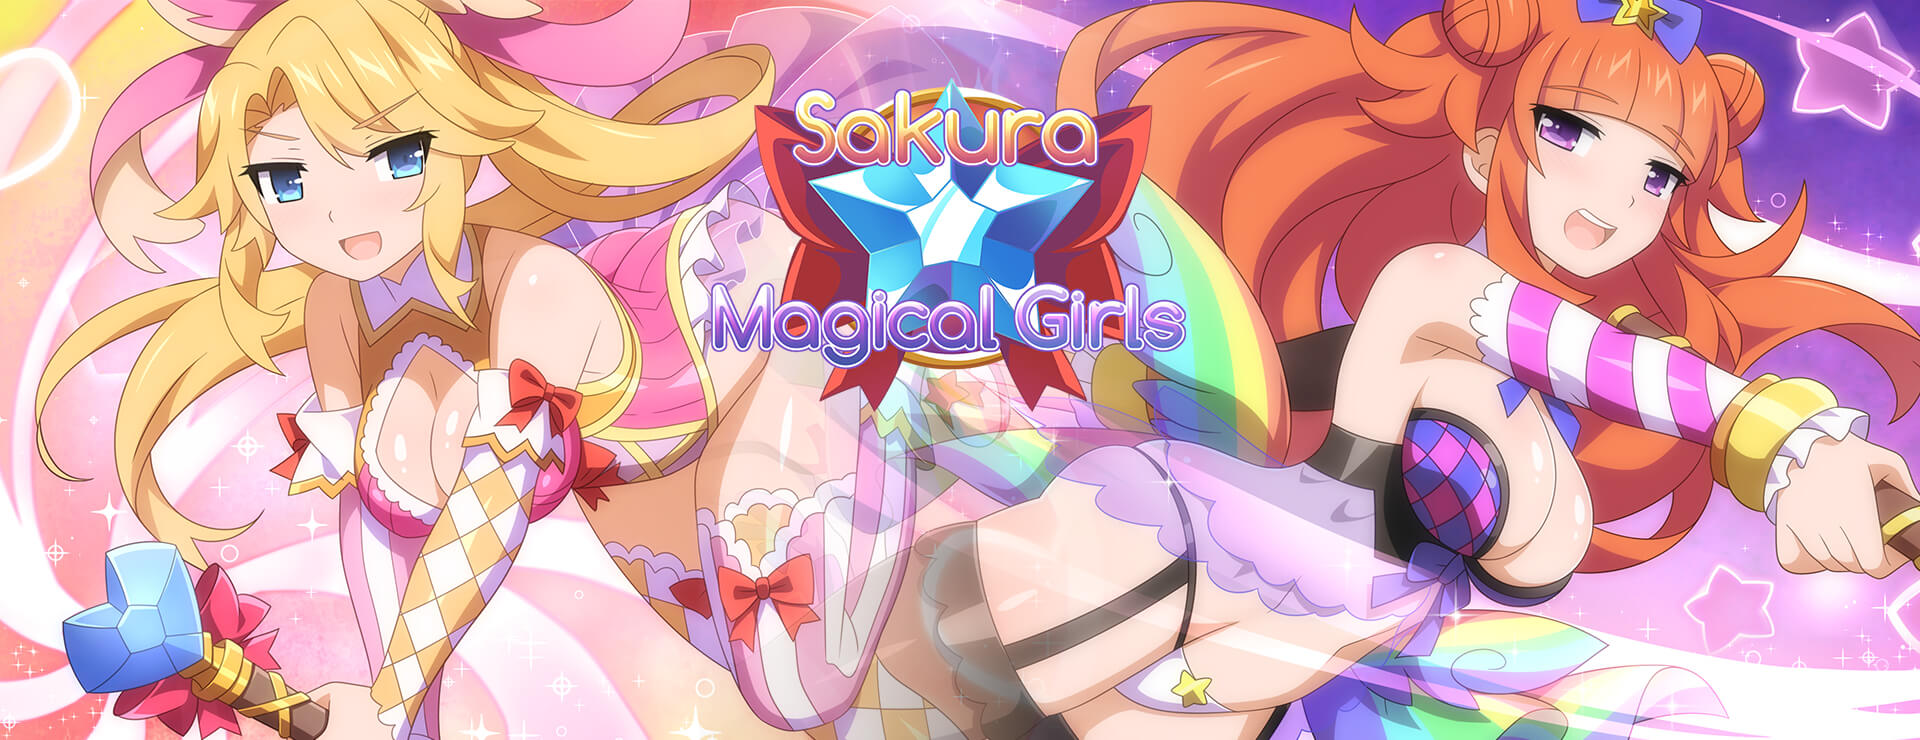 Sakura Magical Girls - ビジュアルノベル ゲーム